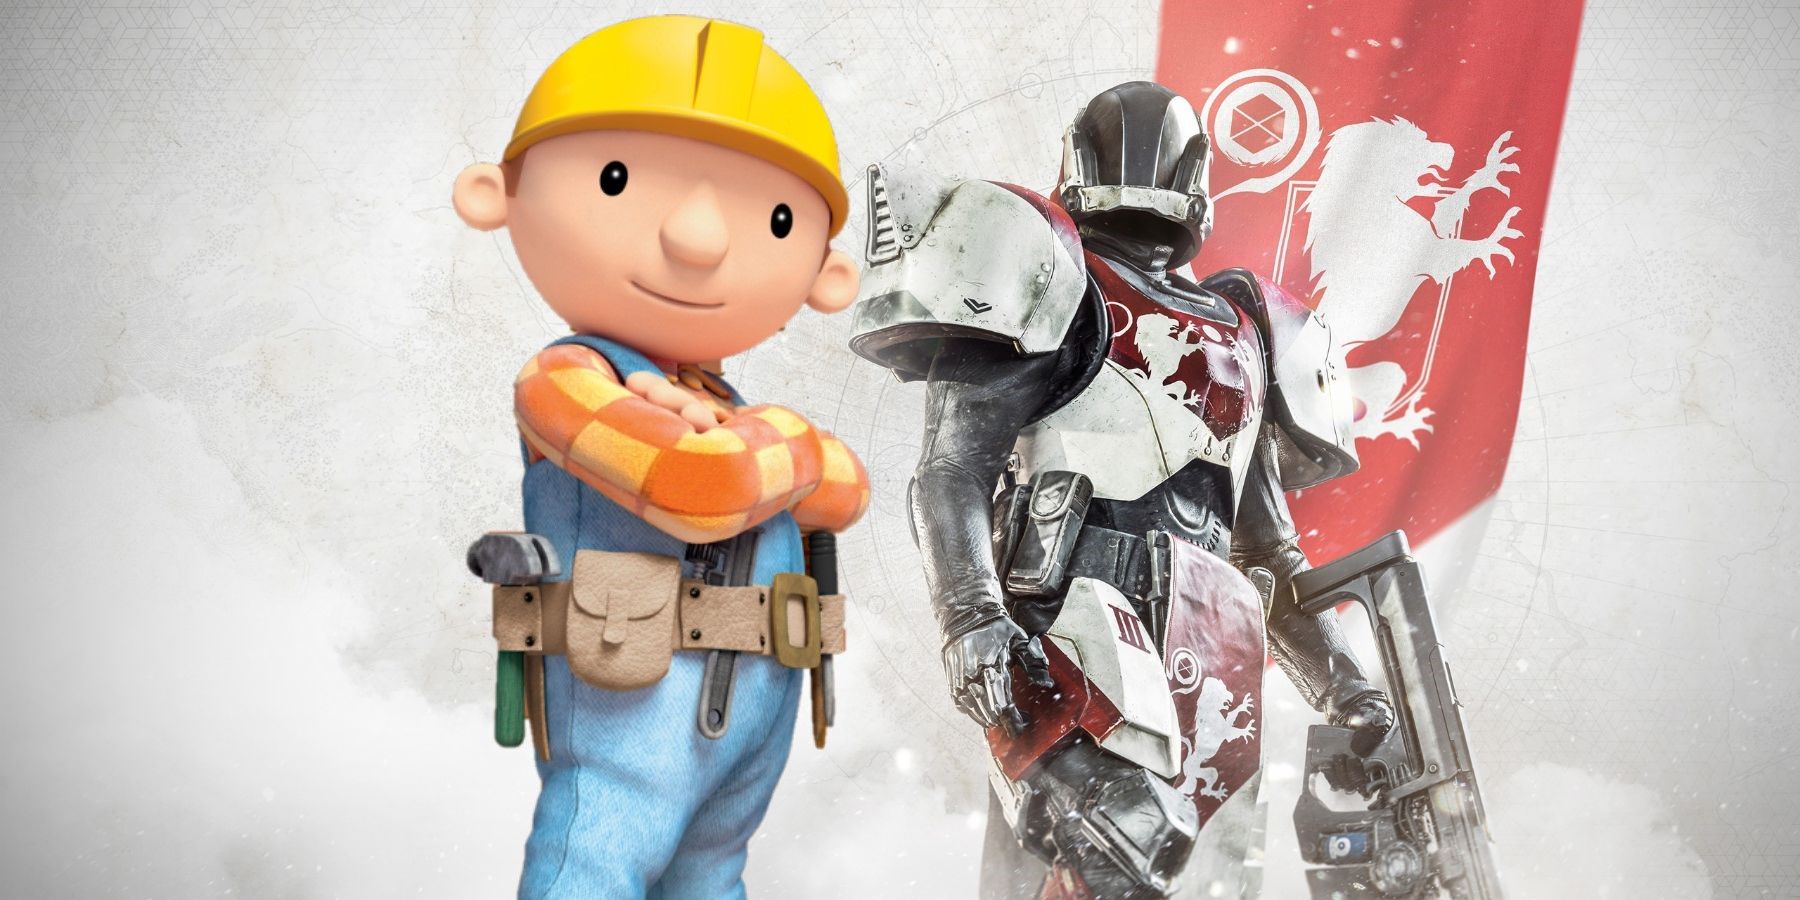 Destiny 2 Player Shares Bob The Builder Look